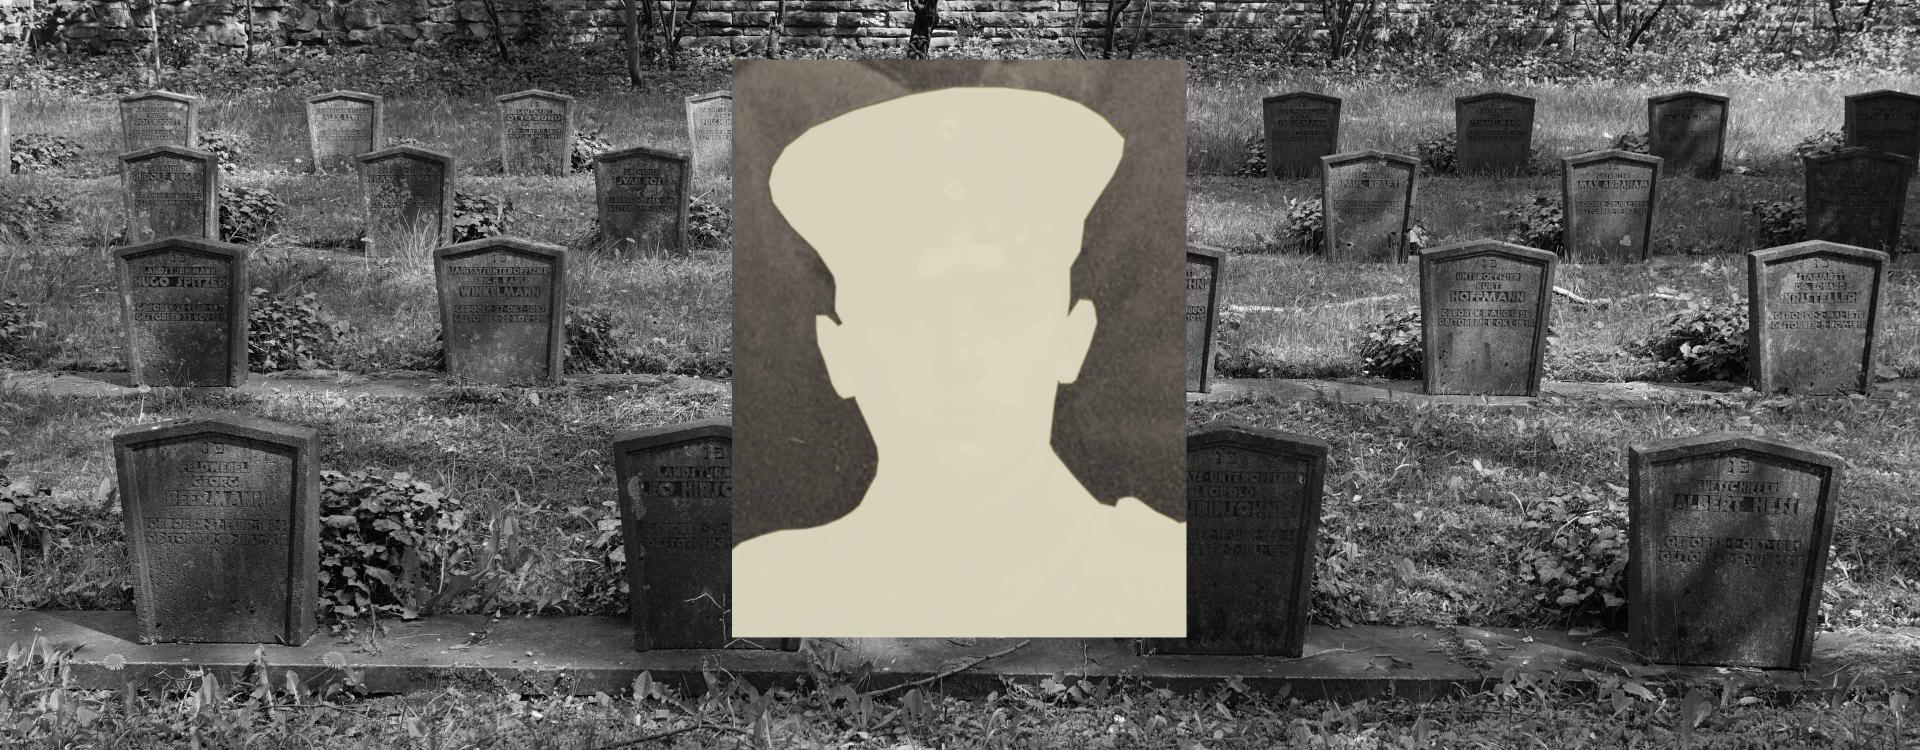 Eine Collage: im Hintergrund stehen Grabsteine auf einem Friedhof, davor ein Passbild, das nur die Silhouette eines Kopfes zeigt.